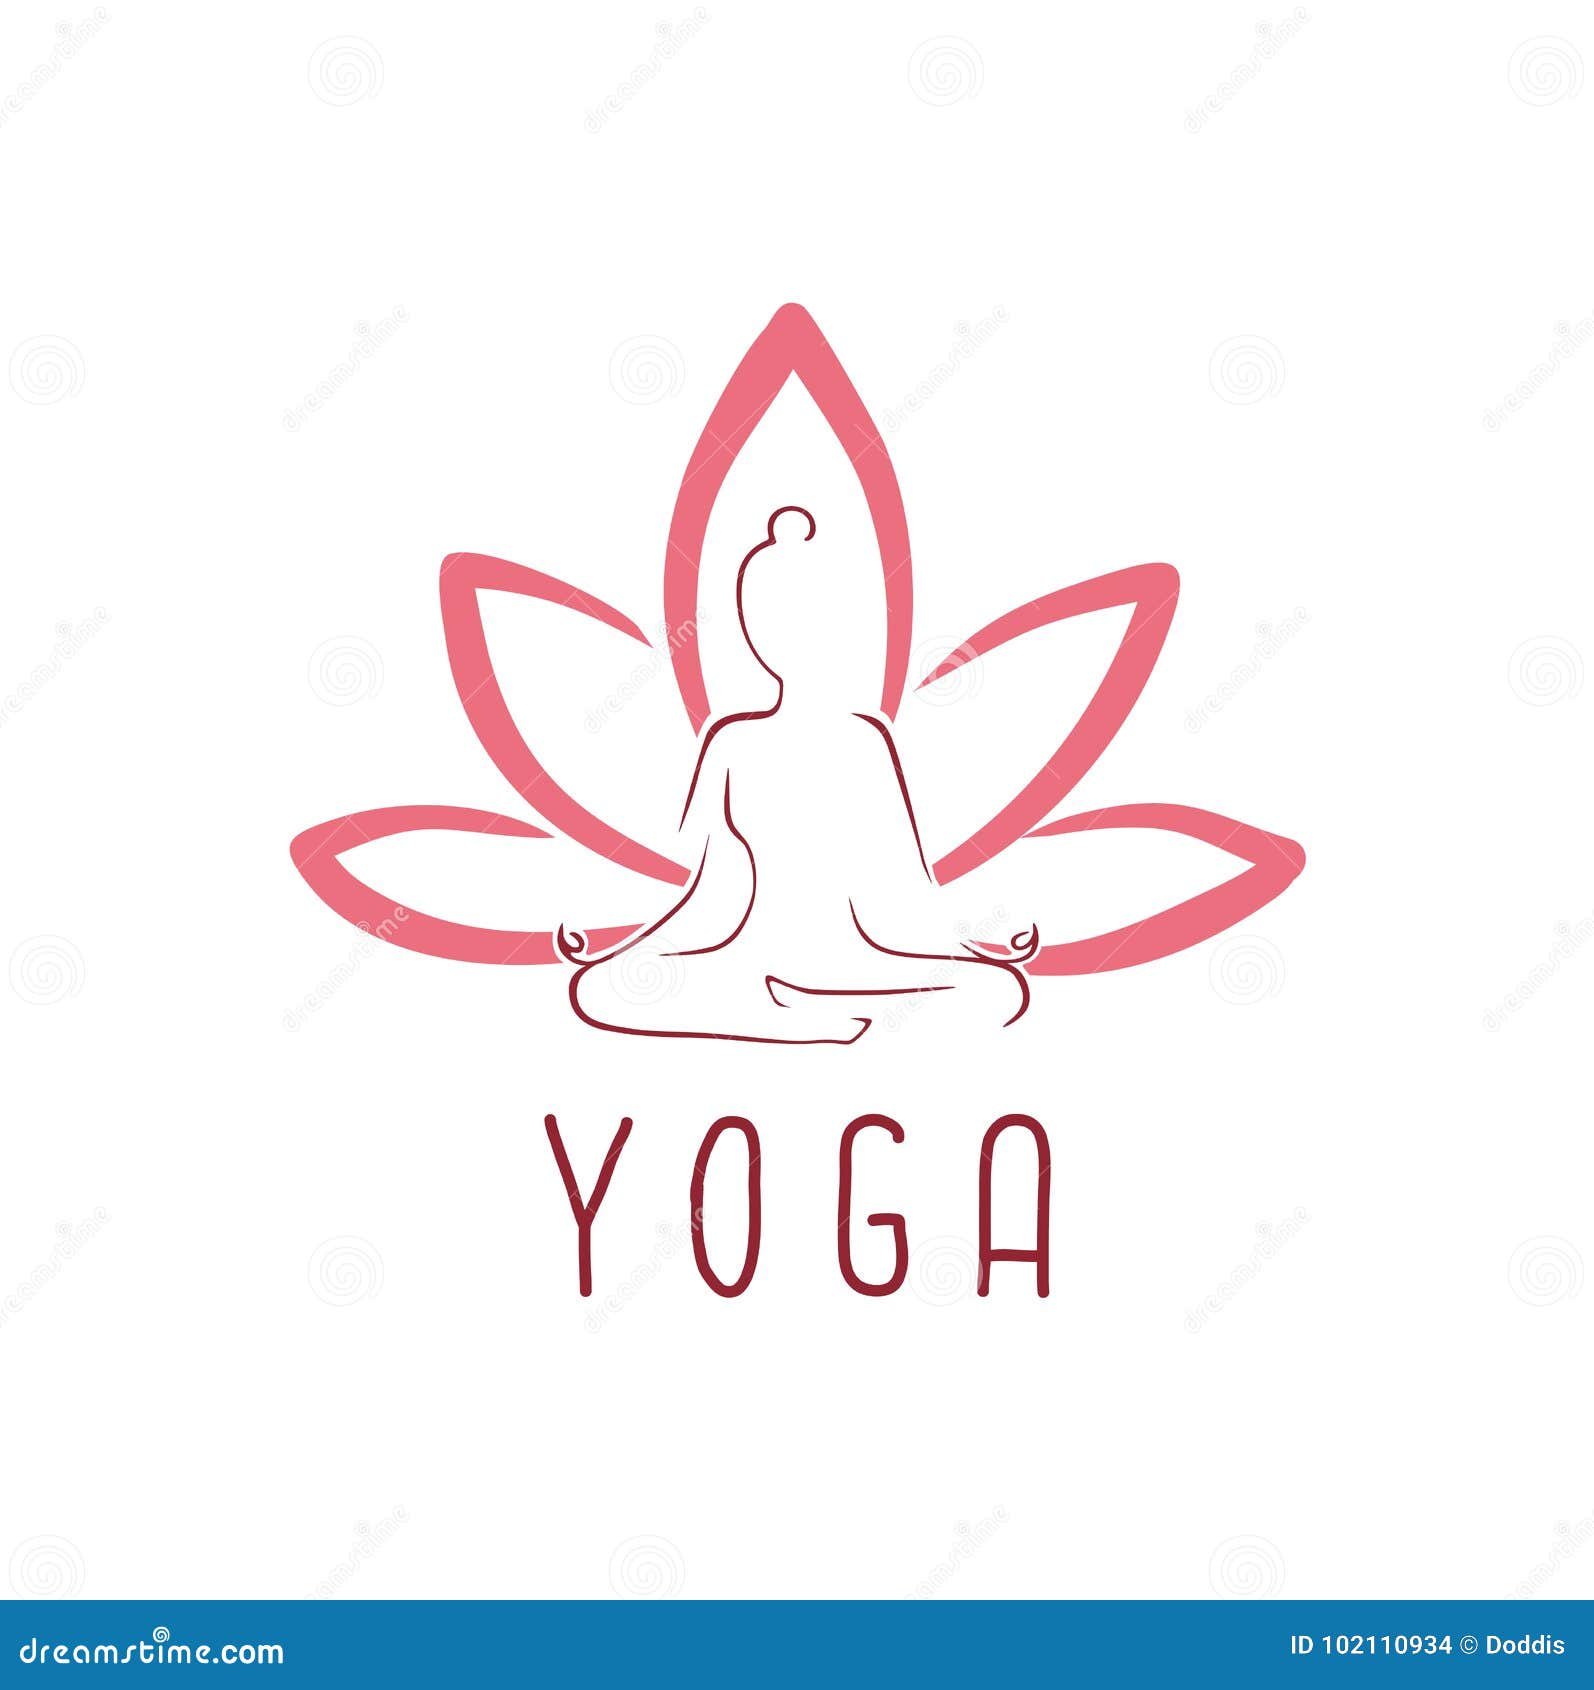 Đến với Yogalab để tự tay thiết kế logo yoga vector theo phong cách ...